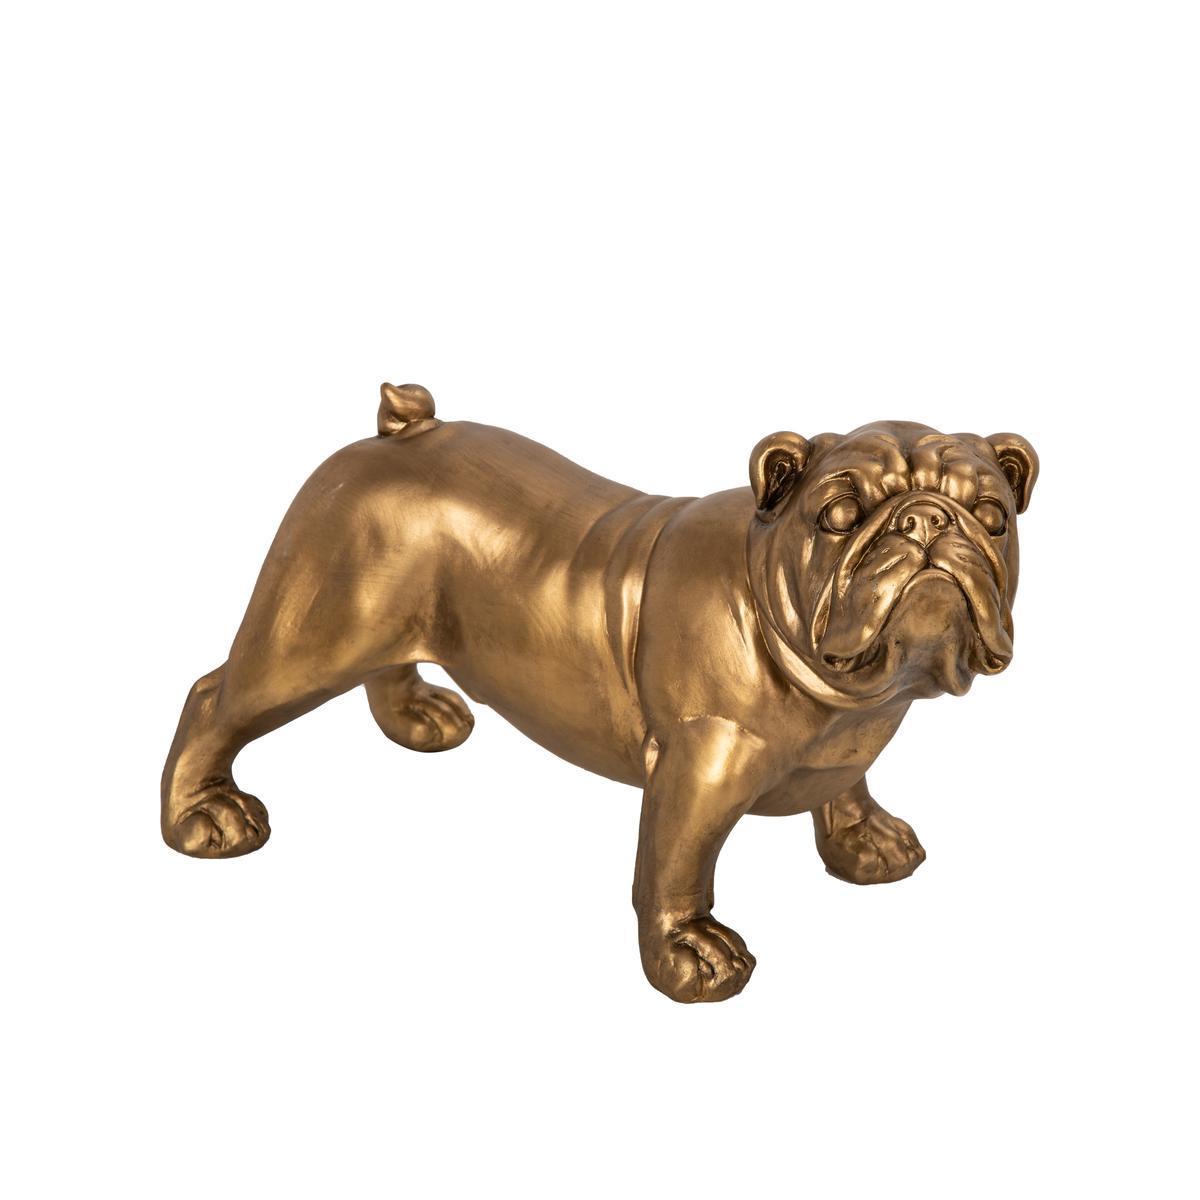 Statuette déco de Bulldog - 38.5 x H 23.5 x 18 cm - Différents coloris - Or - K.KOON